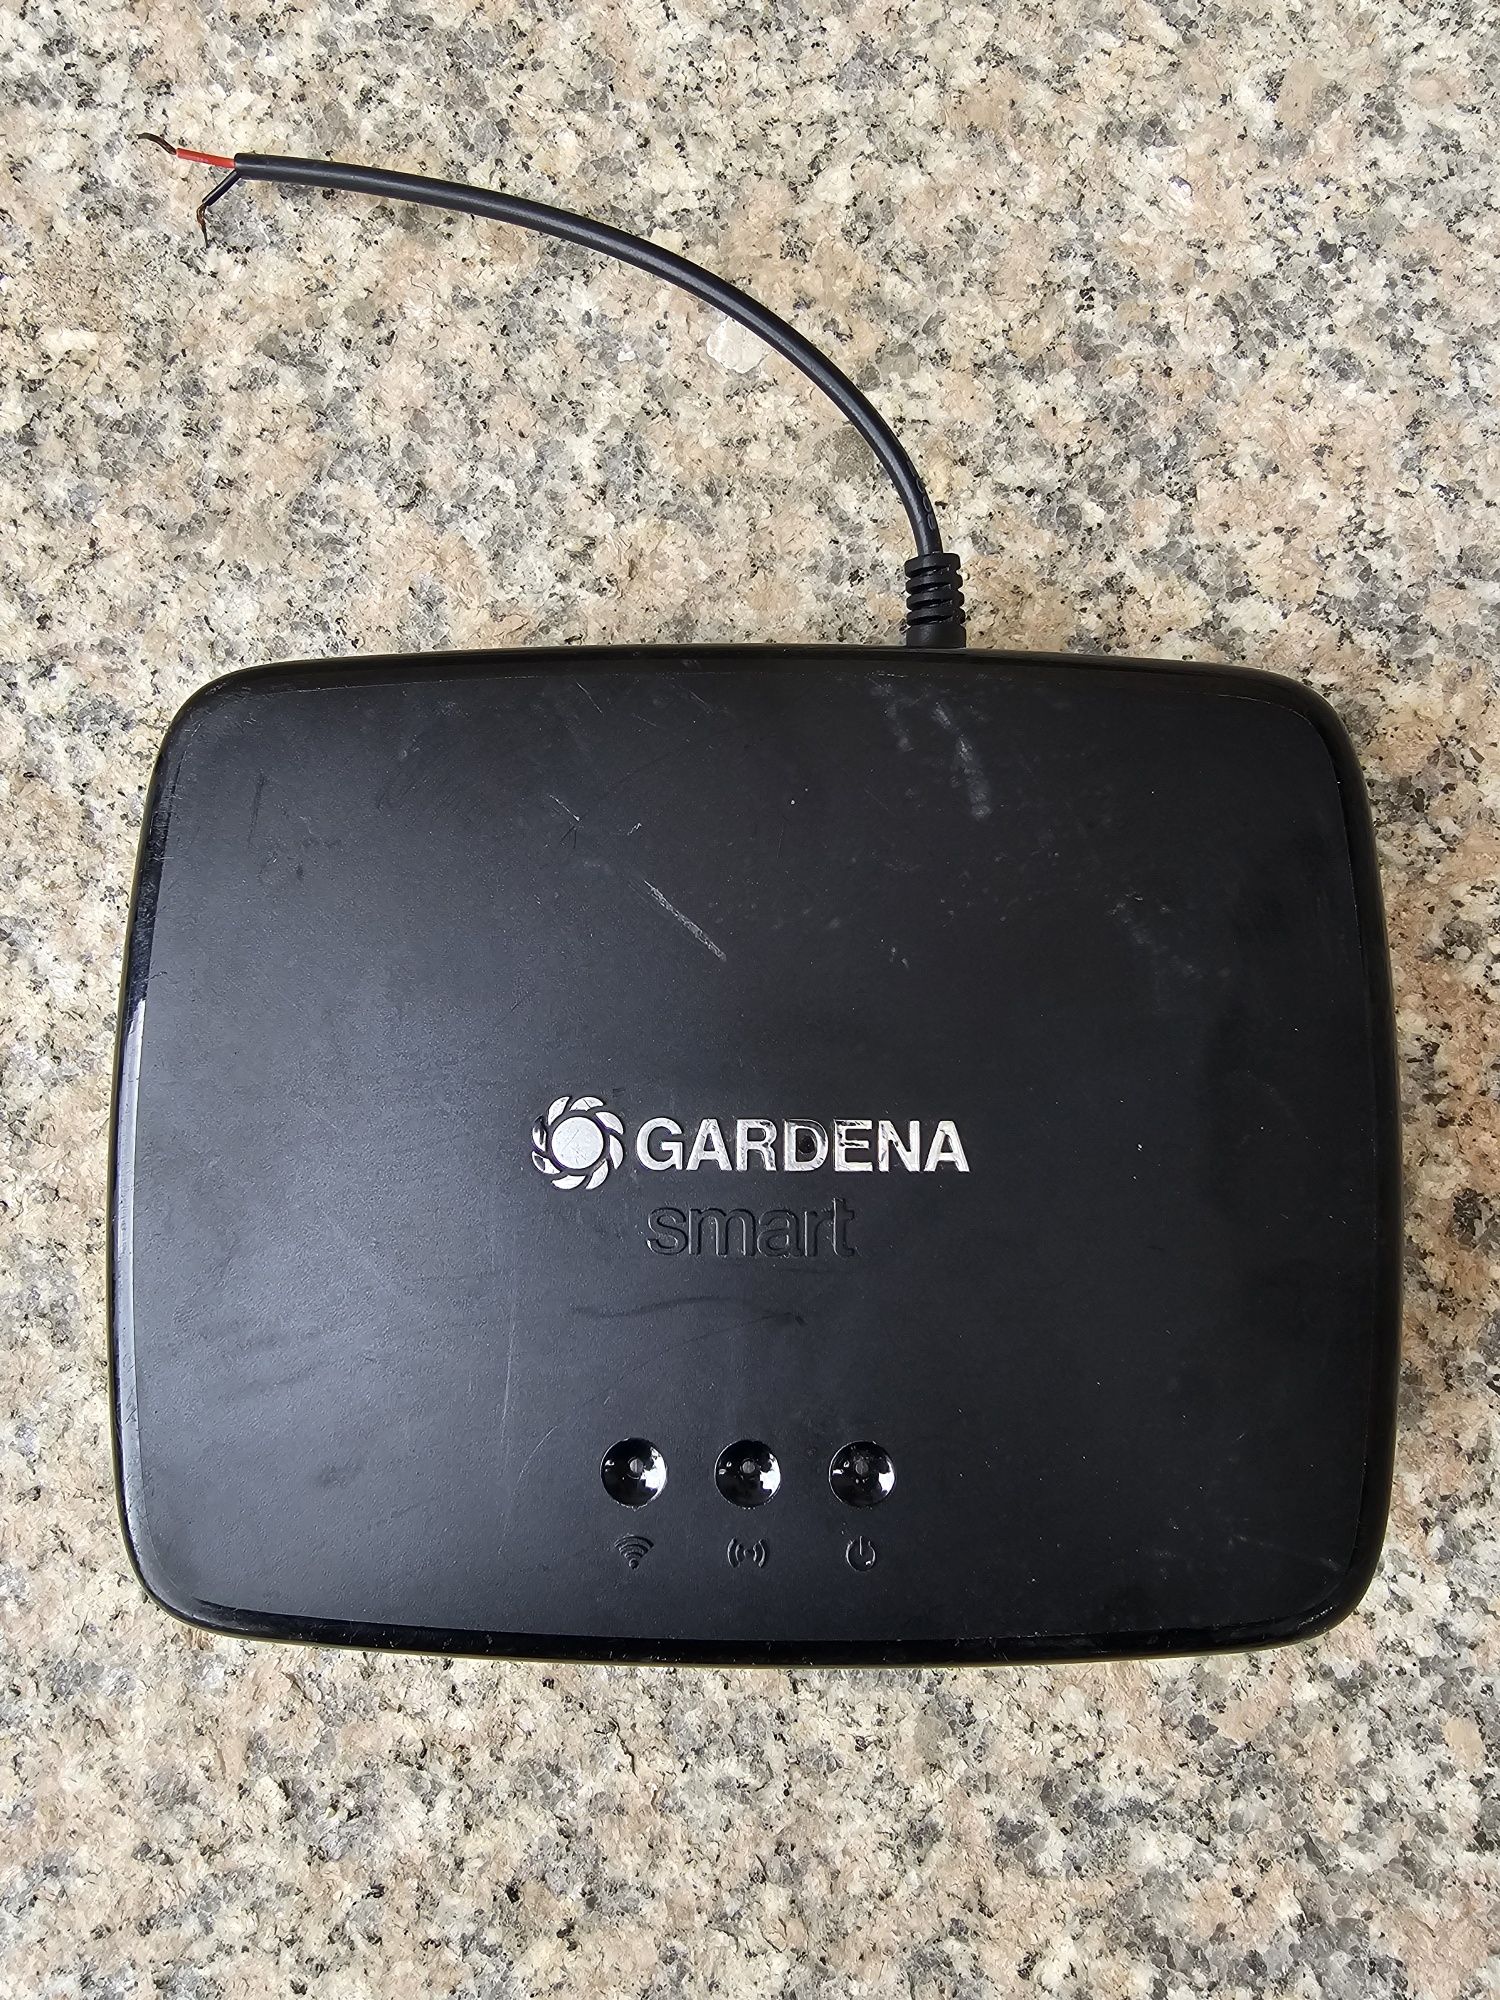 Gardena smart router